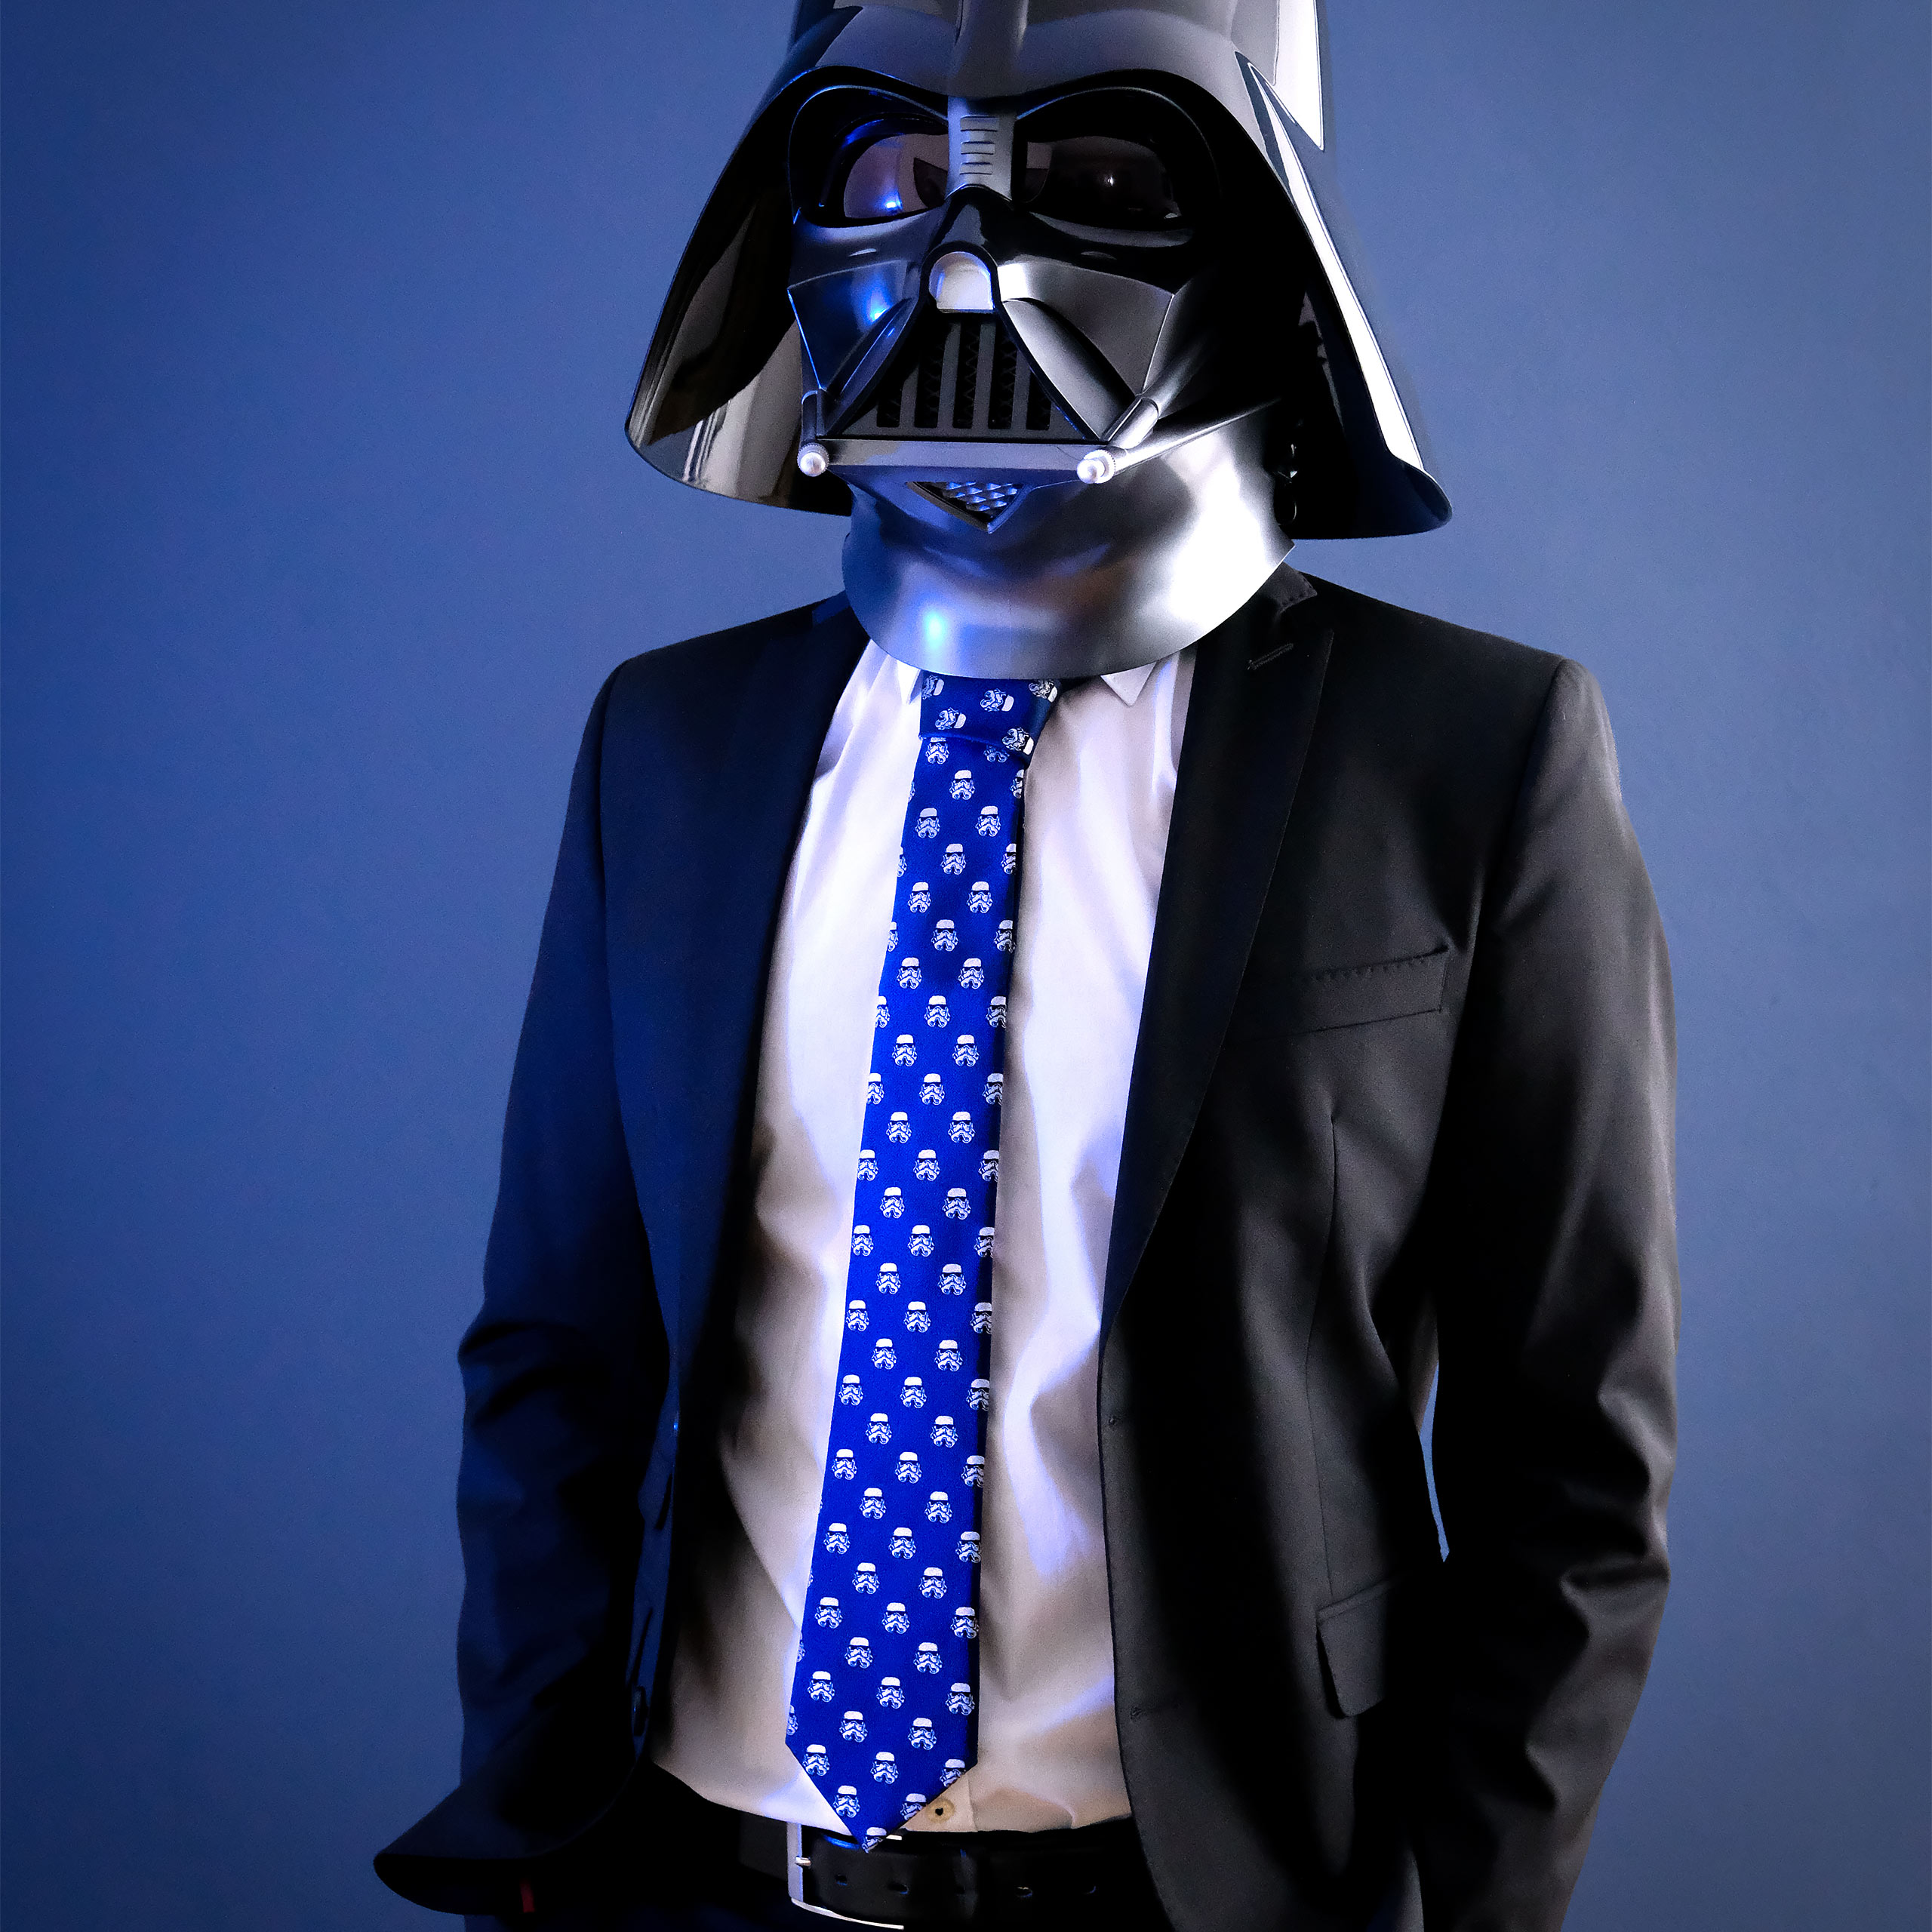 Darth Vader Helm Replik mit Soundeffekten - Star Wars